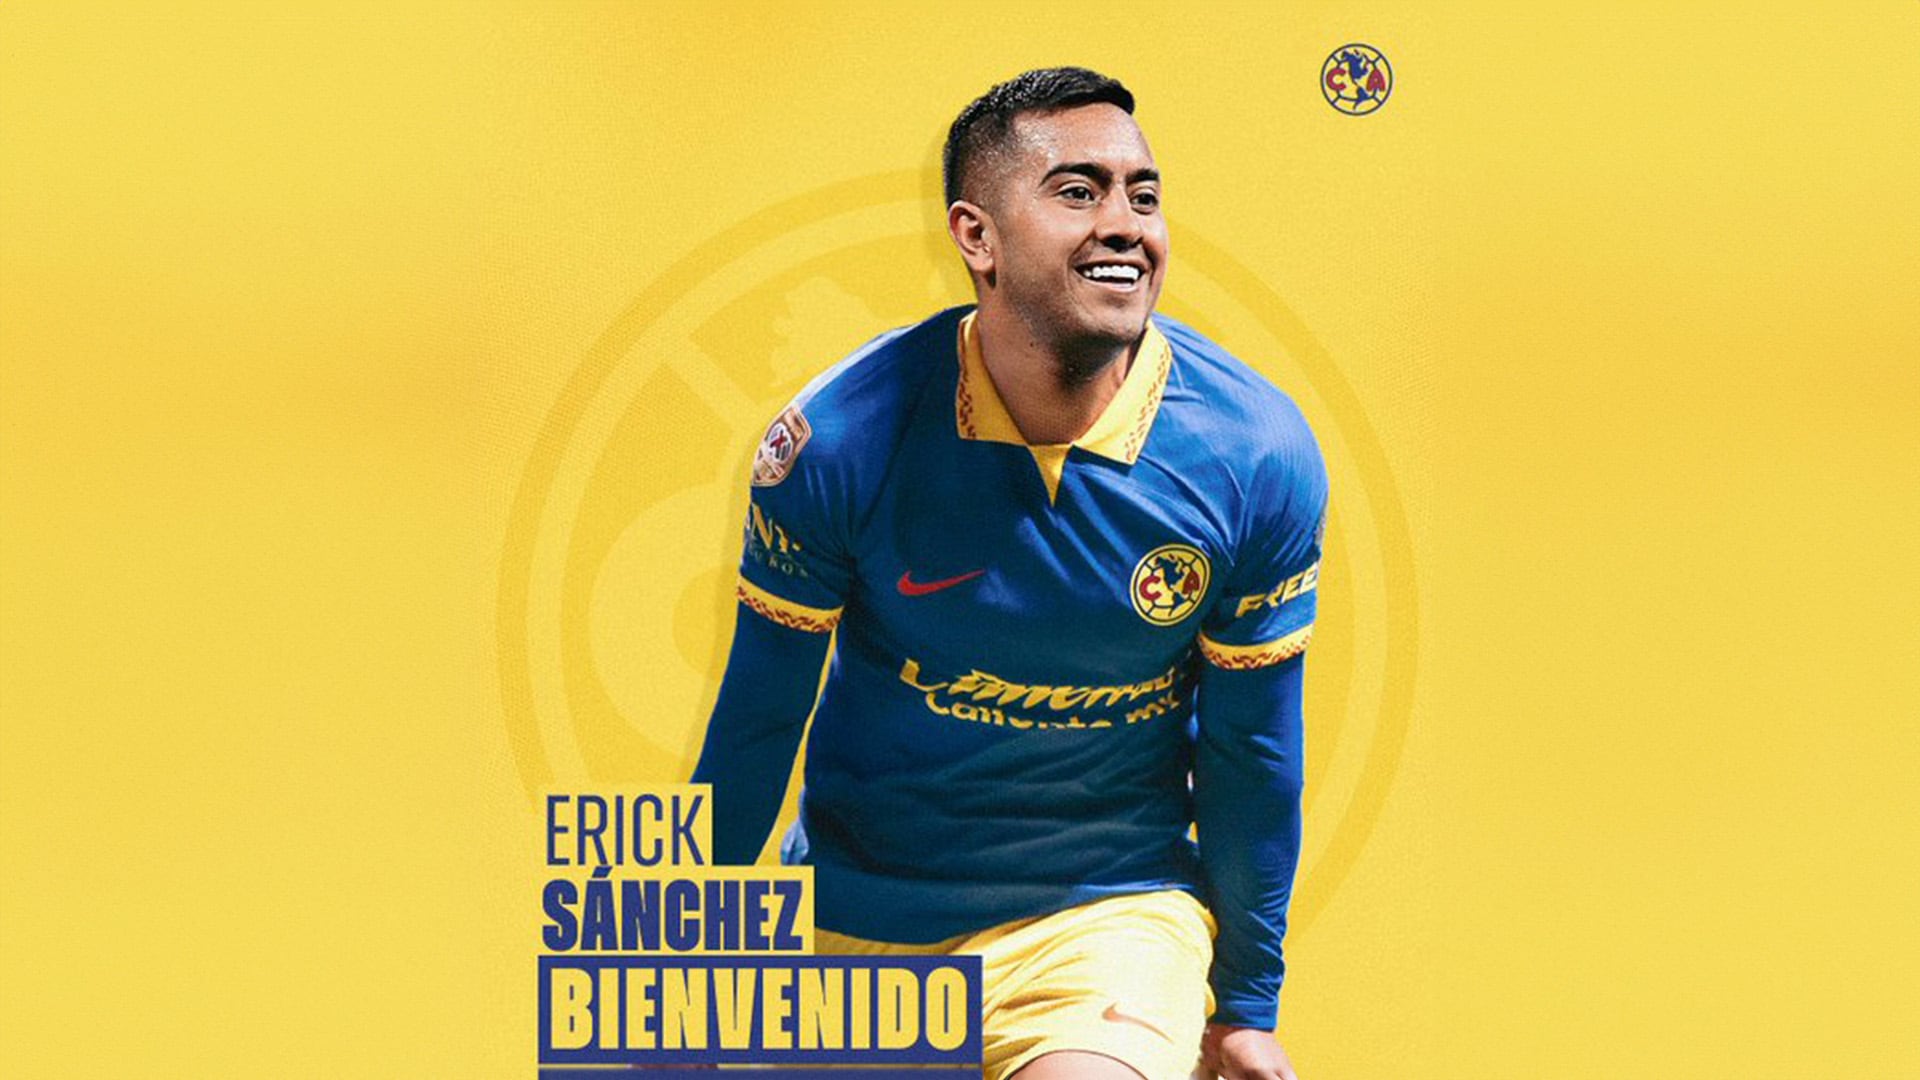 Erick Sánchez